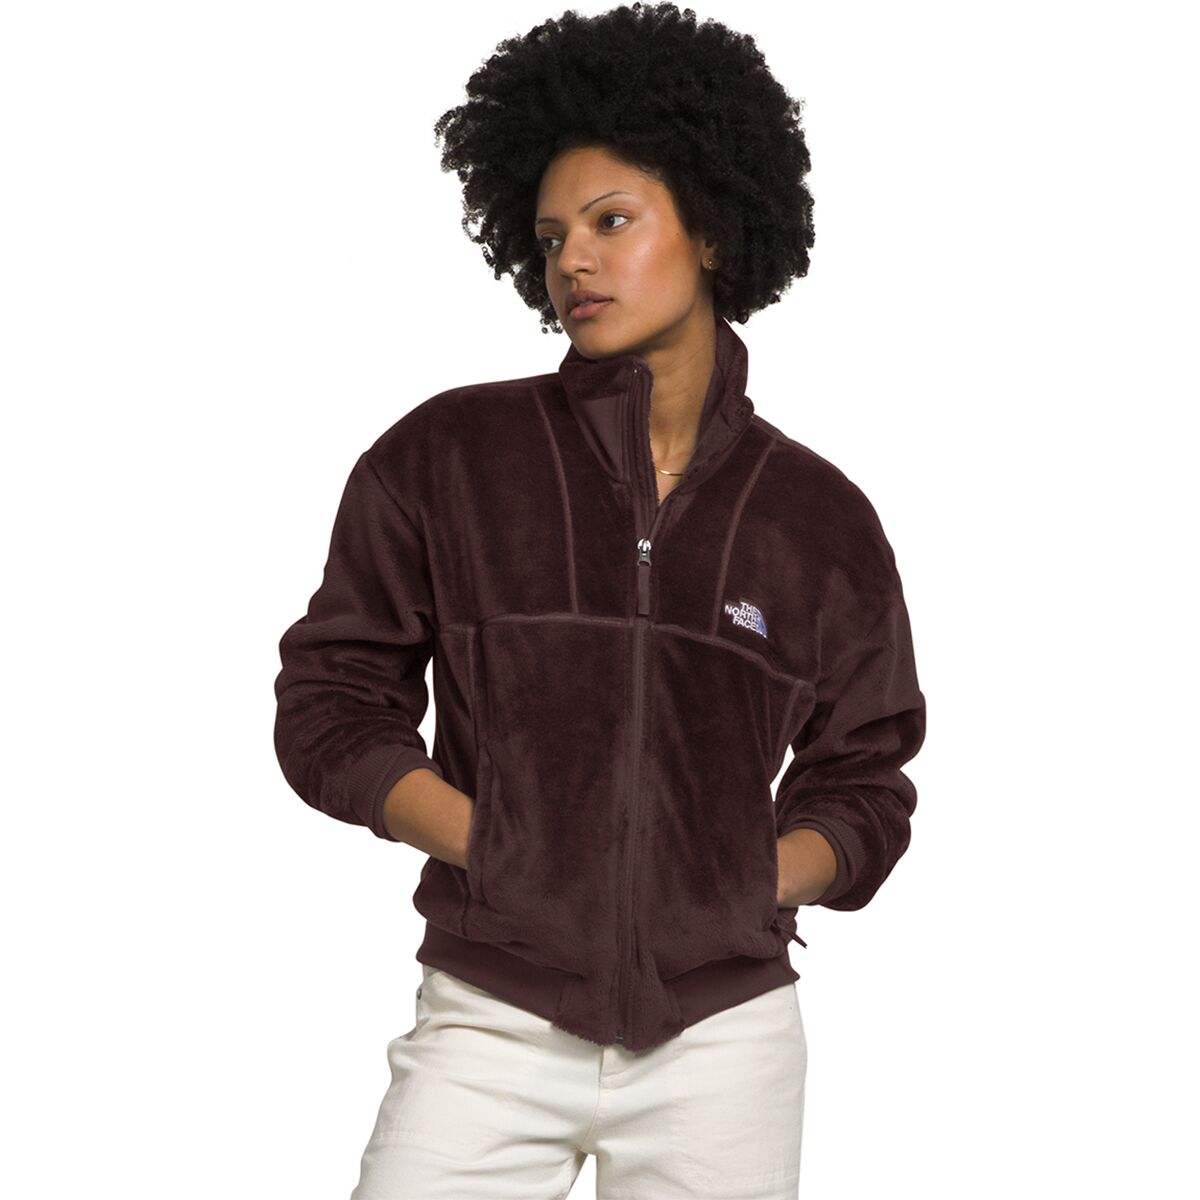 Luxe Osito Full-Zip Jacket - Women